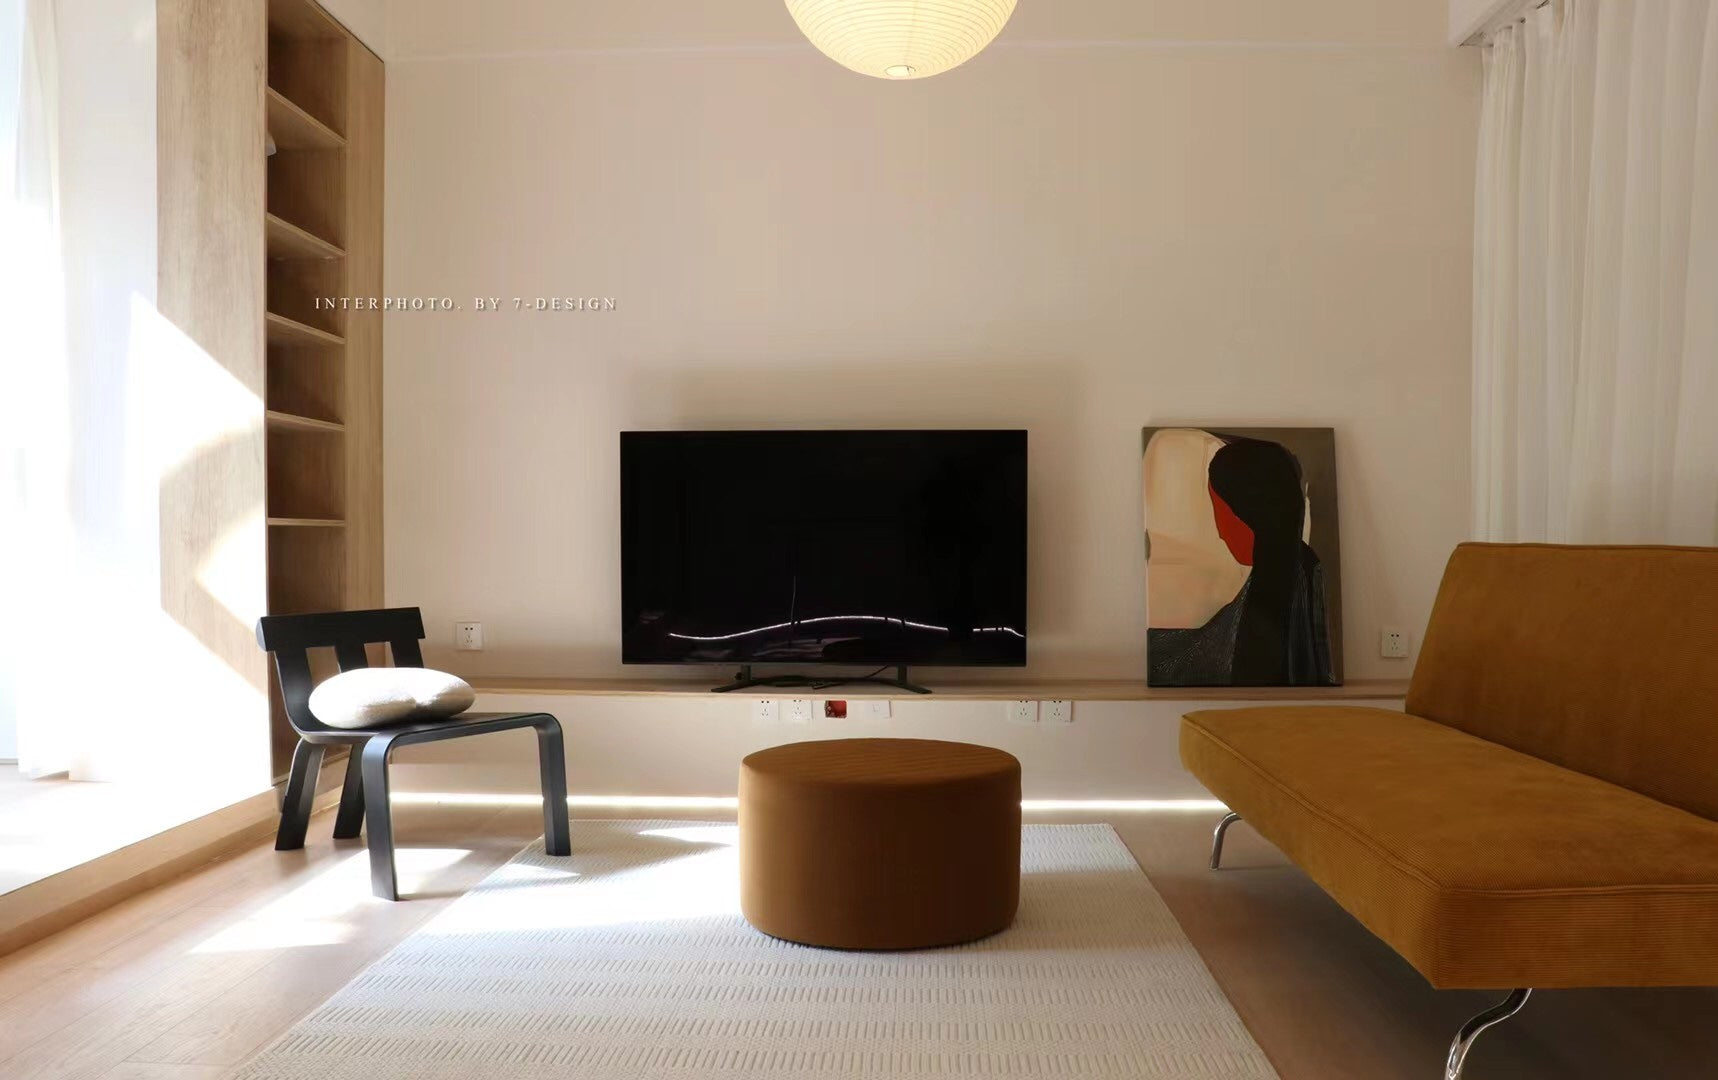 DESCARTES CHAIR  Ziinlife Modern Design Furniture Hong Kong 